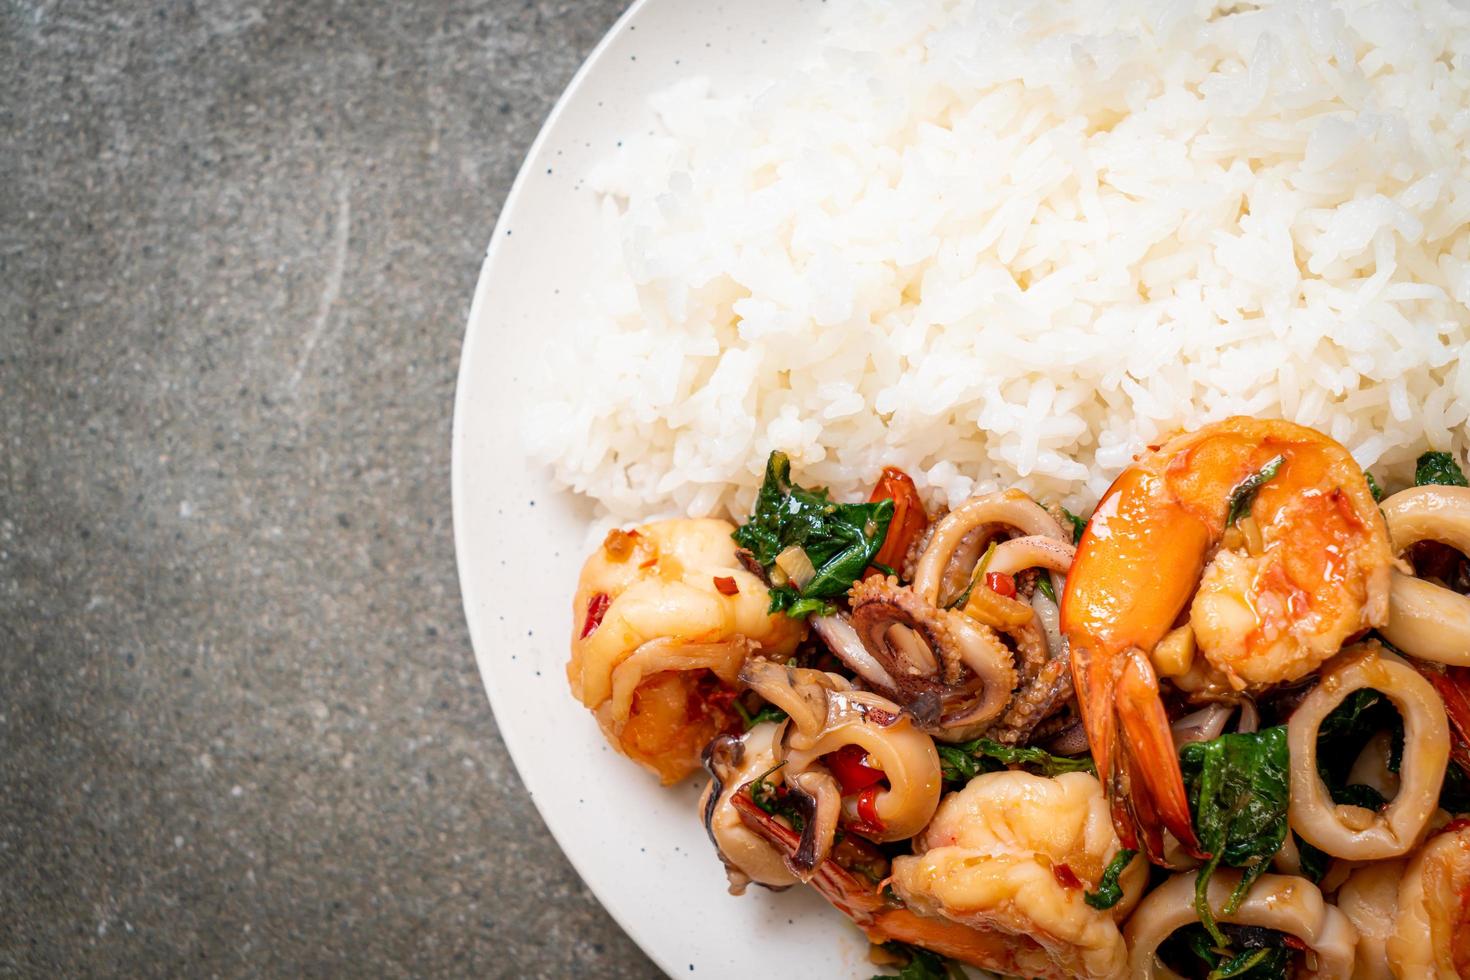 riz et fruits de mer sautés de crevettes et calamars au basilic thaï - style cuisine asiatique photo